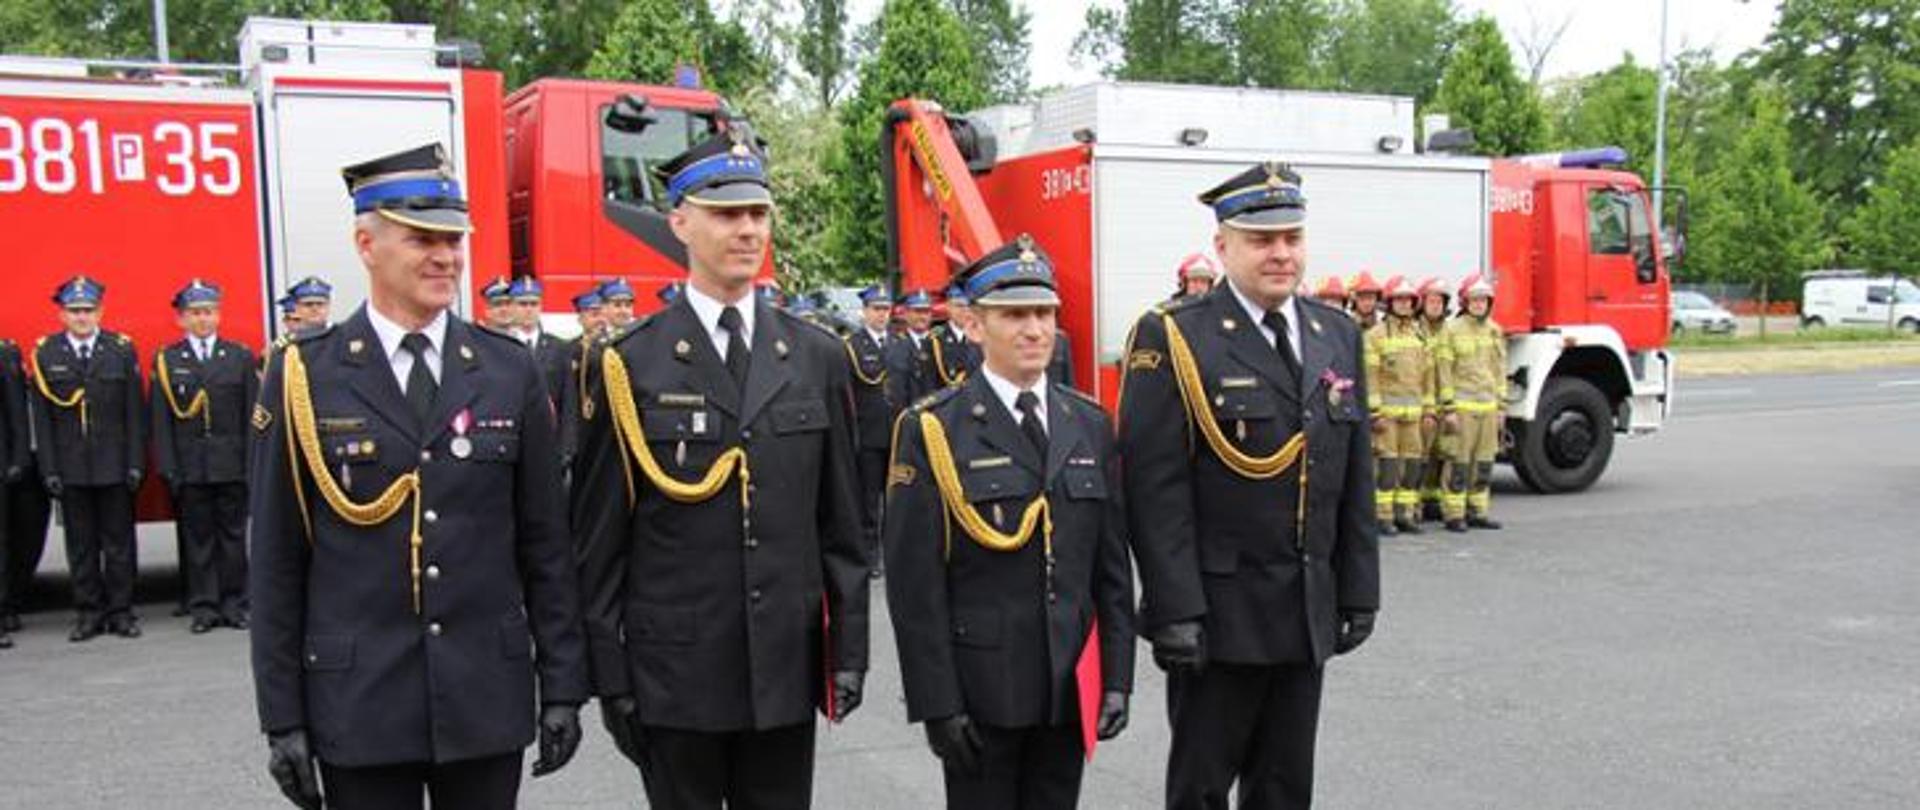 czterech strażaków w rogatywkach i mundurach ze sznurem stoi na baczność w szeregu, w tle pojazdy pożarnicze